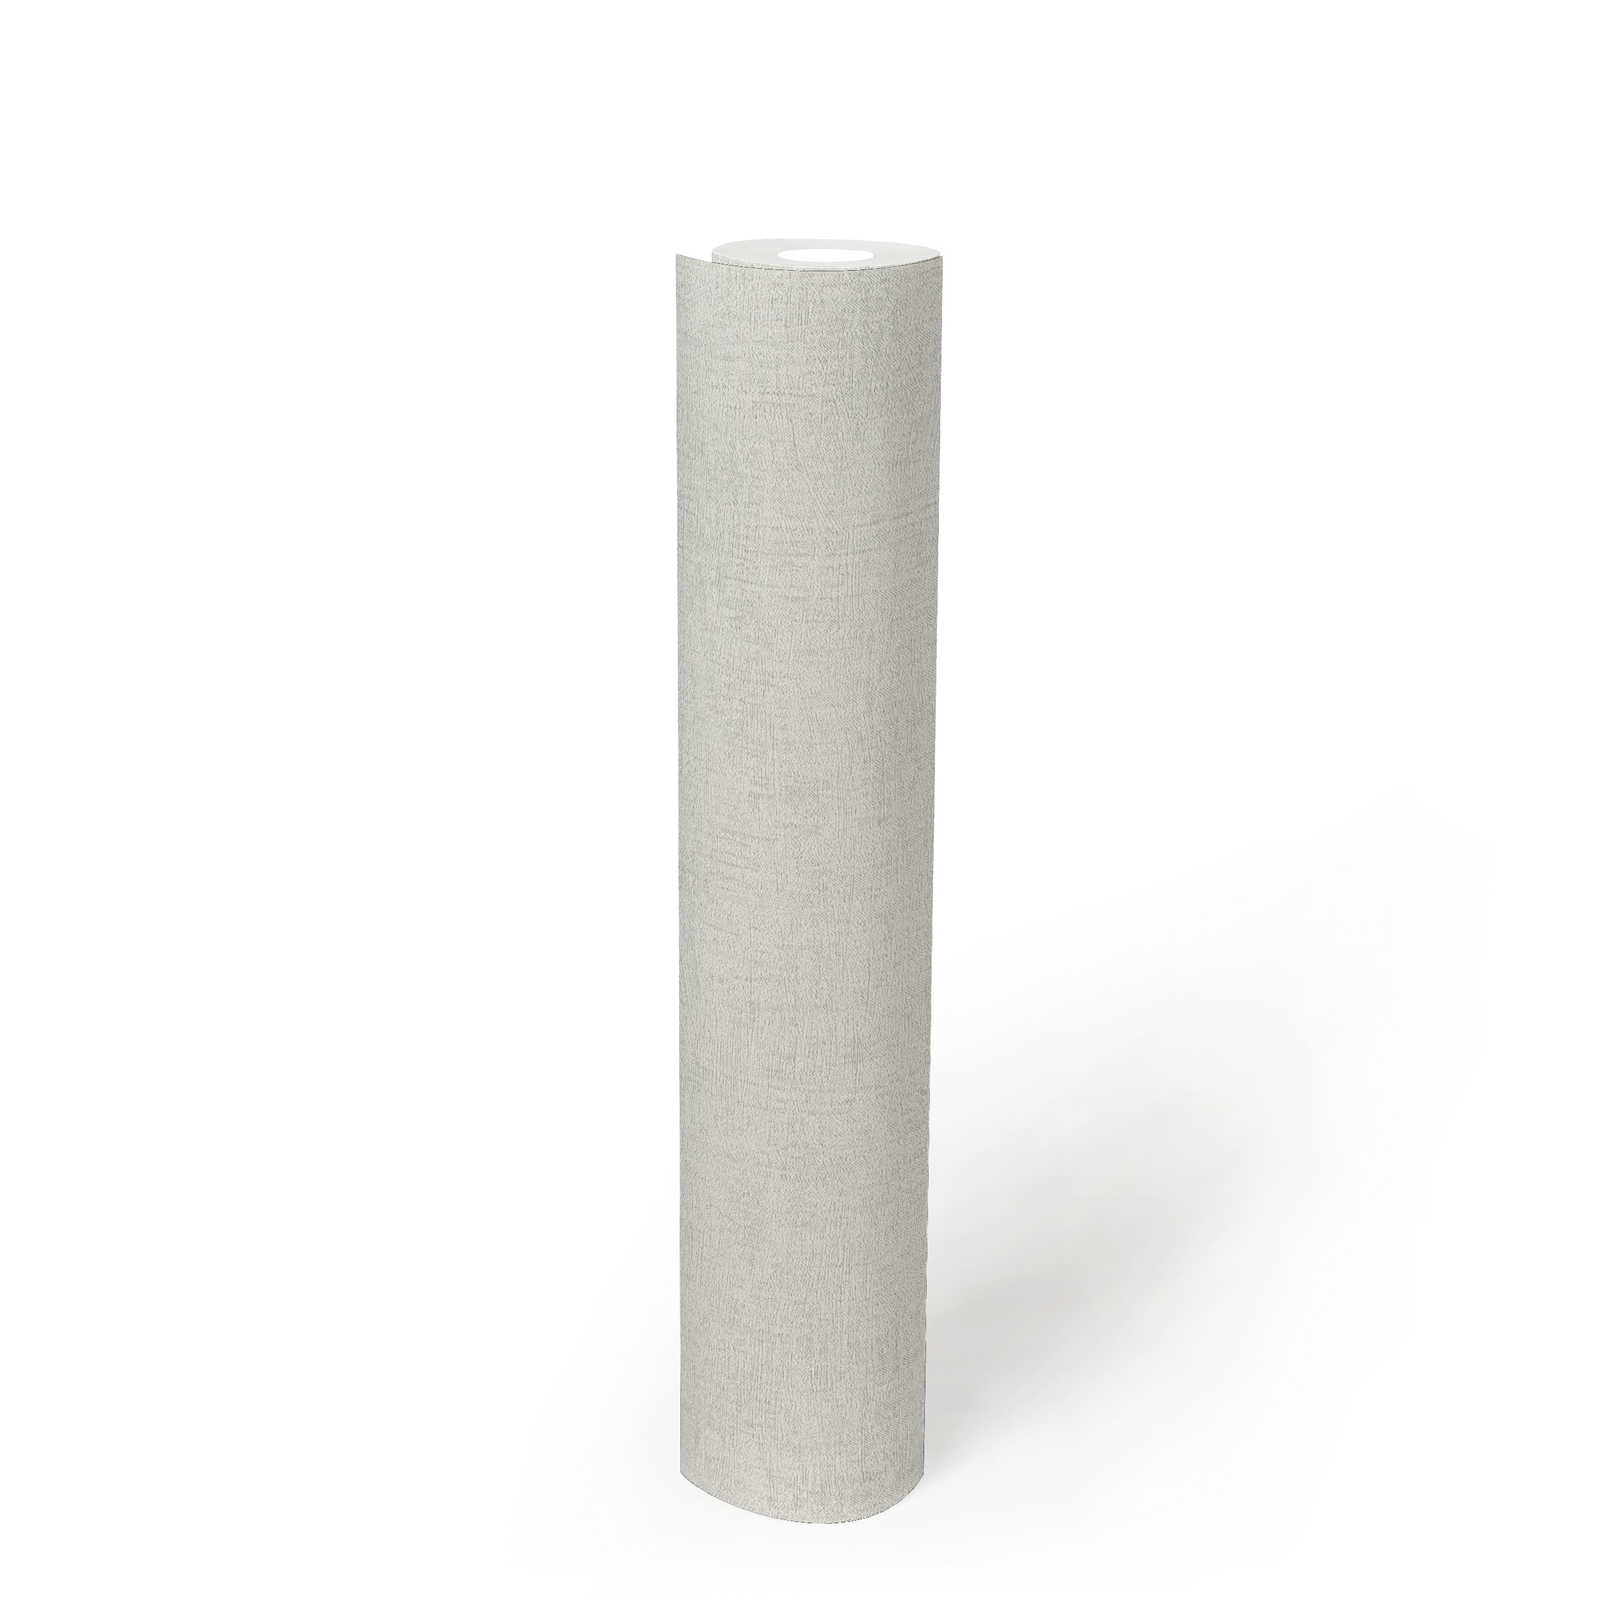             Helle Tapete mit Metallic Glanz & Struktureffekt – Grau, Metallic, Weiß
        